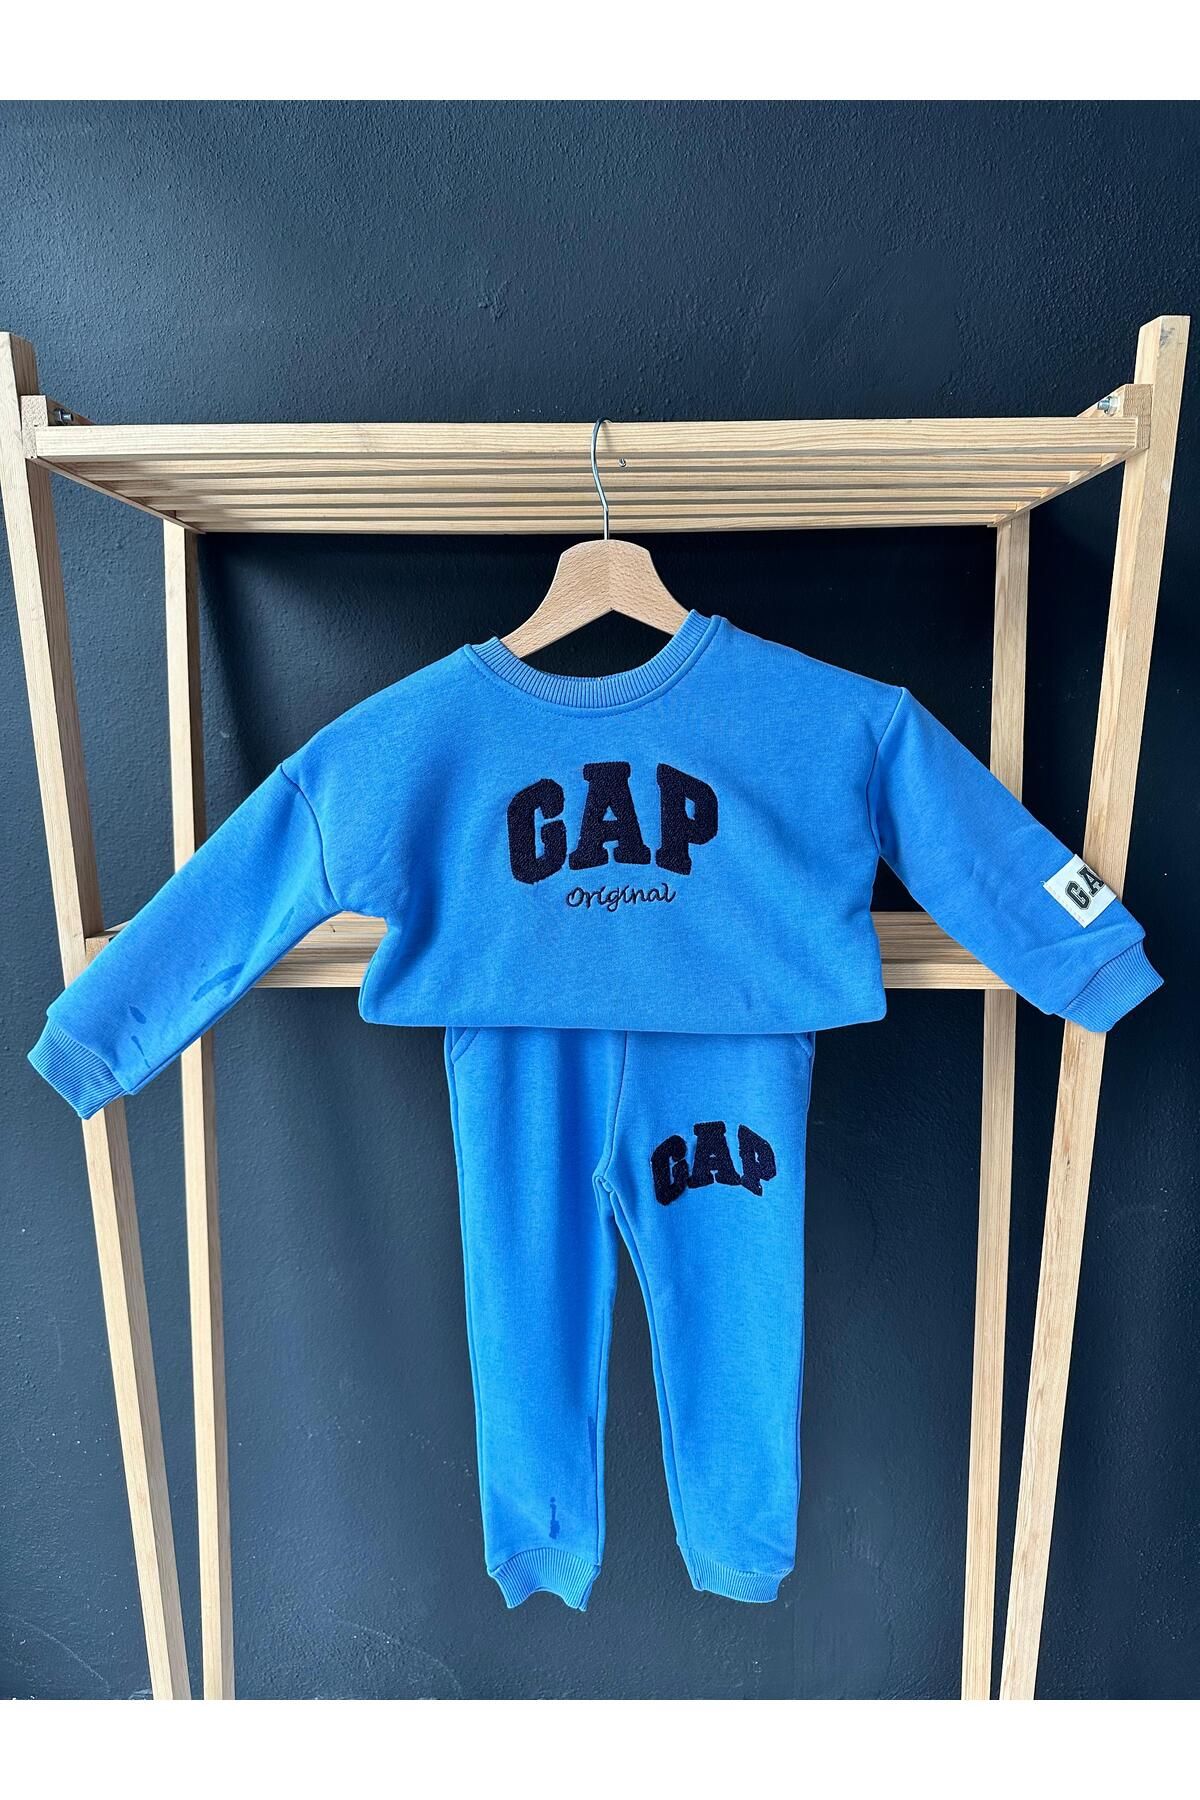 GAP Gap Çocuk Eşofman Takımı / Çocuk Alt Üst Takım